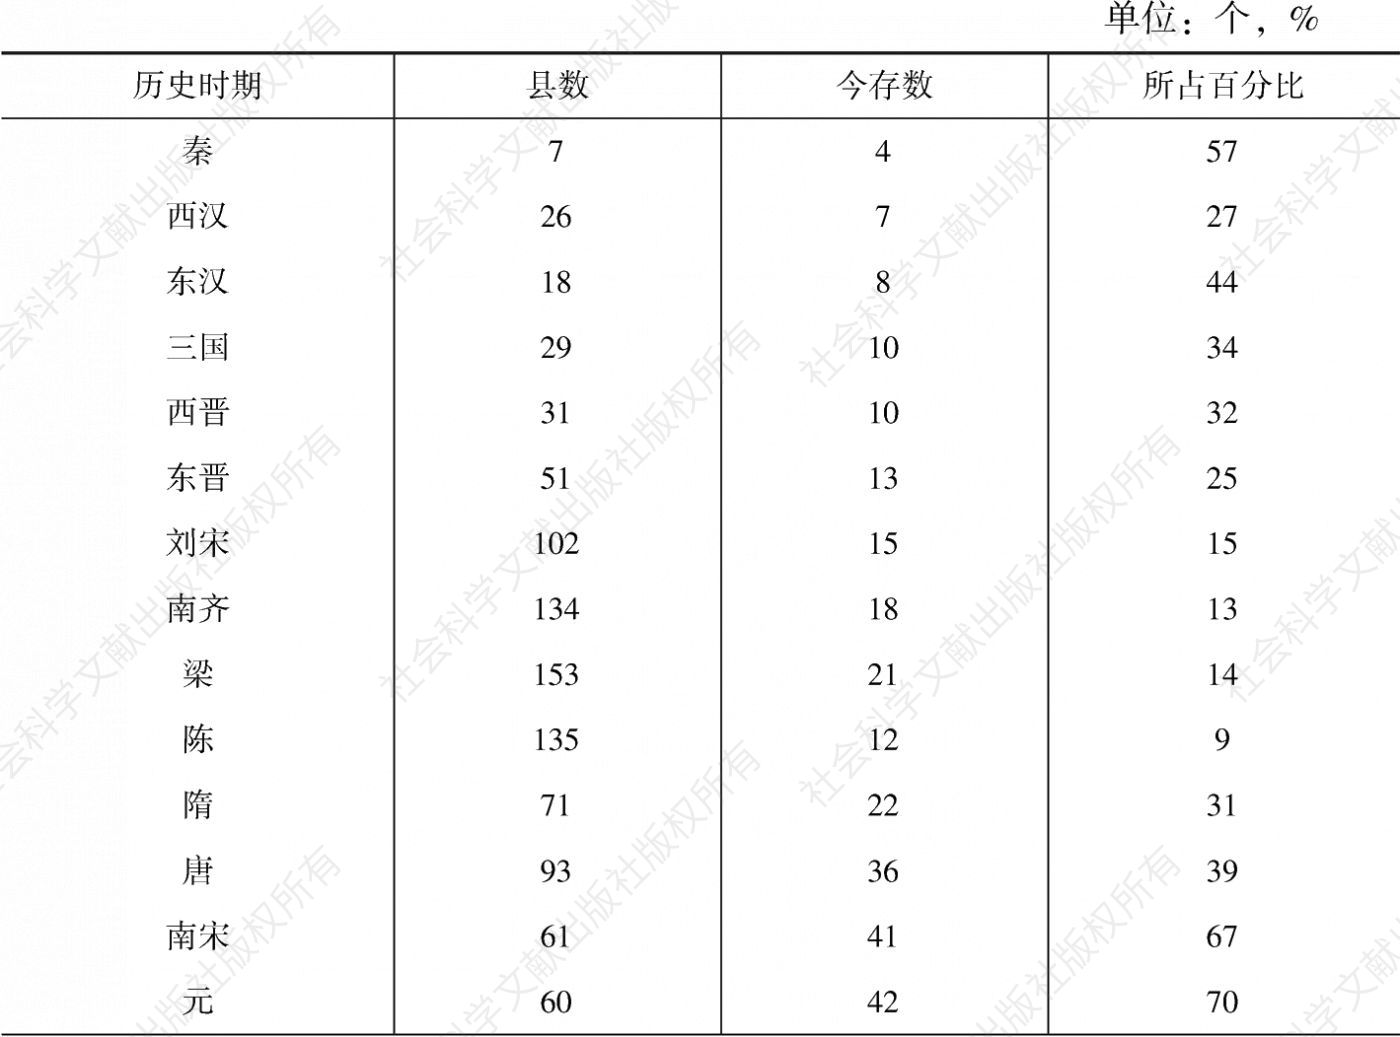 表2-1 广东历史时期县名存废统计